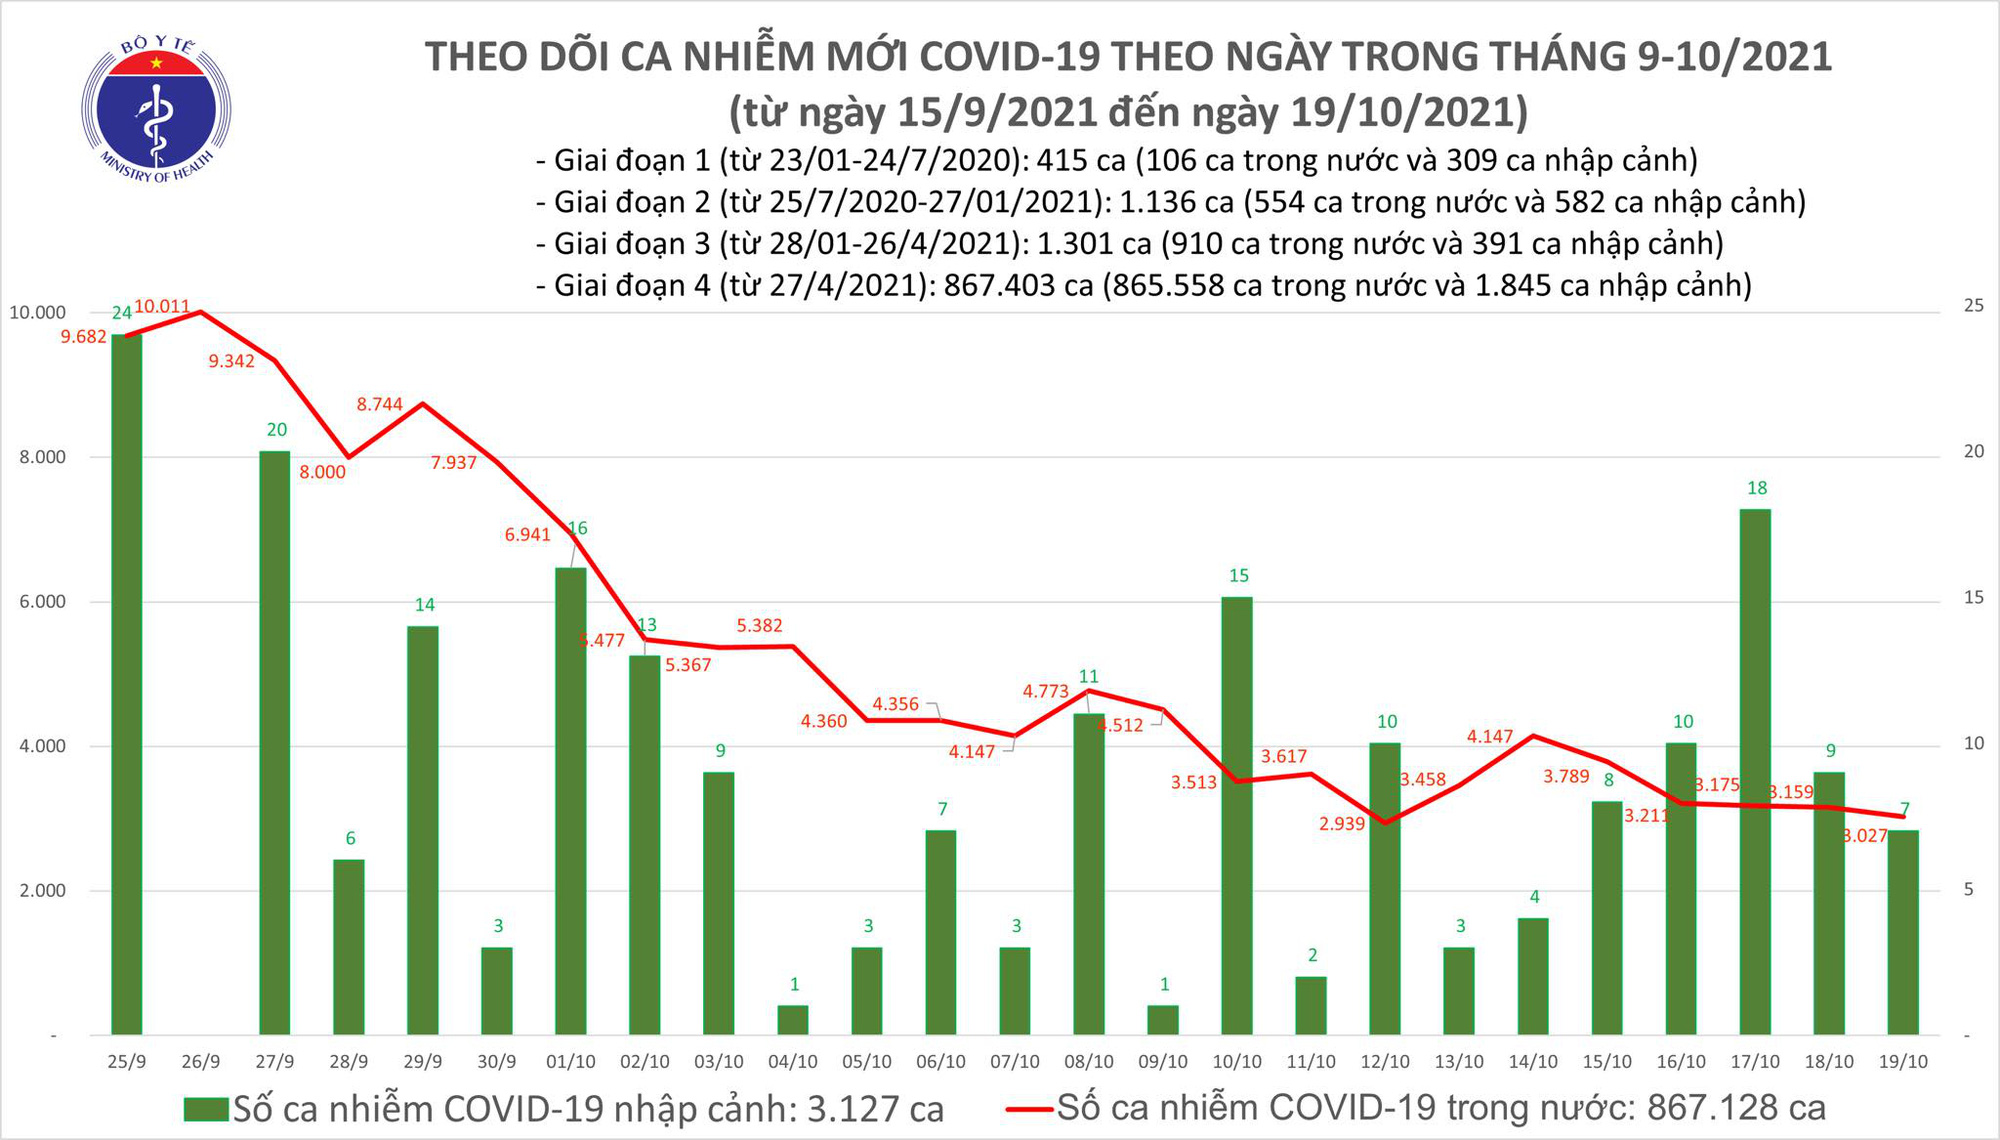 Ngày 19/10: Có 3.034 ca mắc COVID-19 tại TP HCM và 48 tỉnh, thành khác; - Ảnh 1.